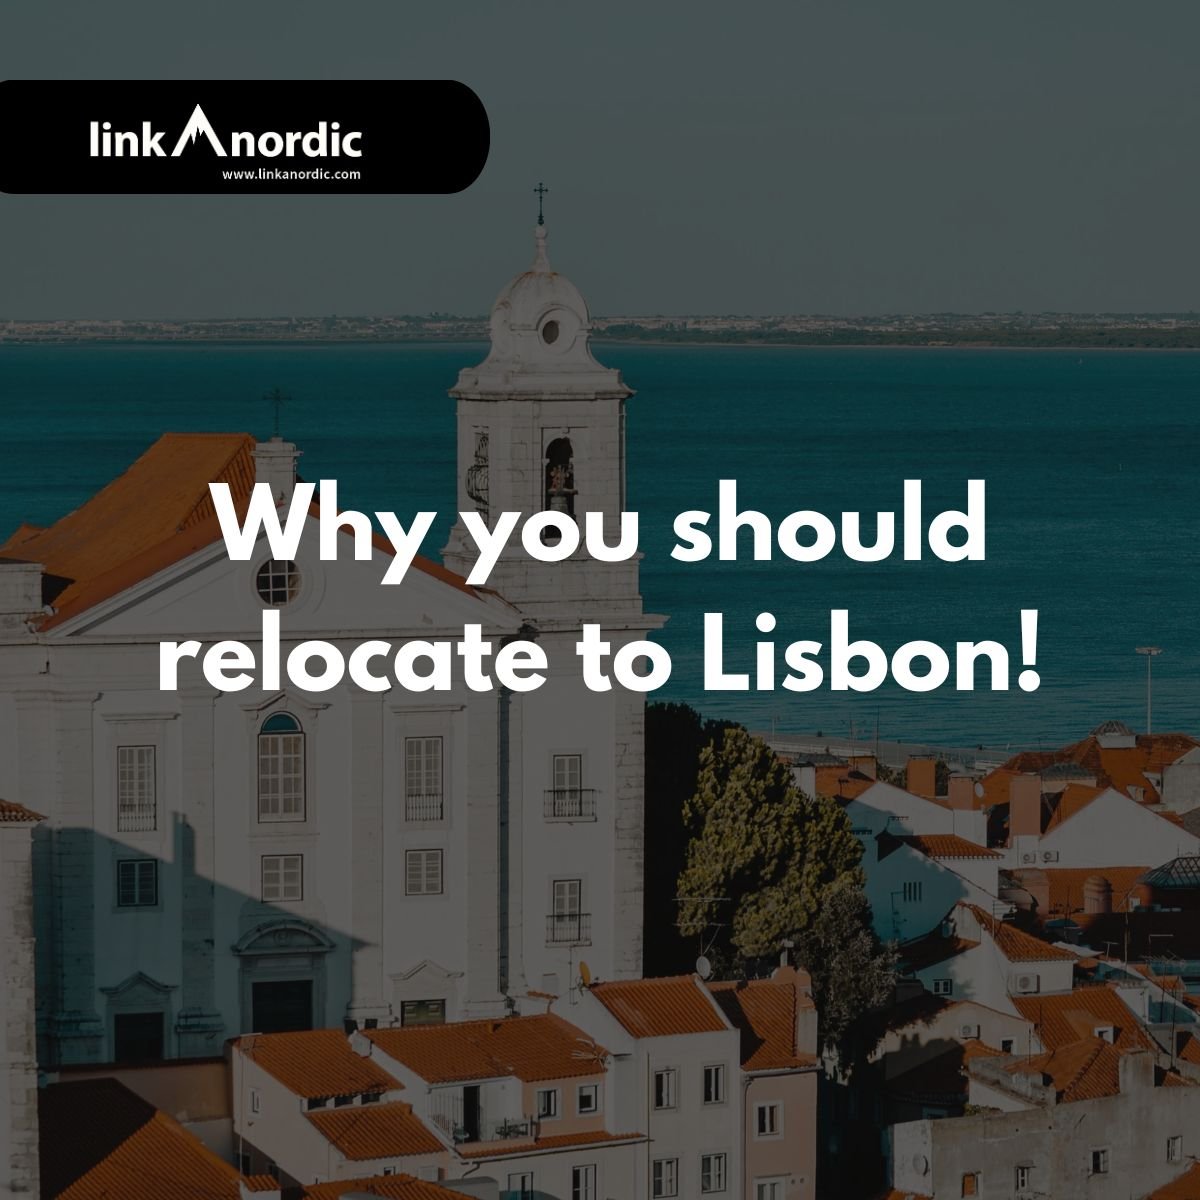 Derfor skal du flytte til Lissabon!